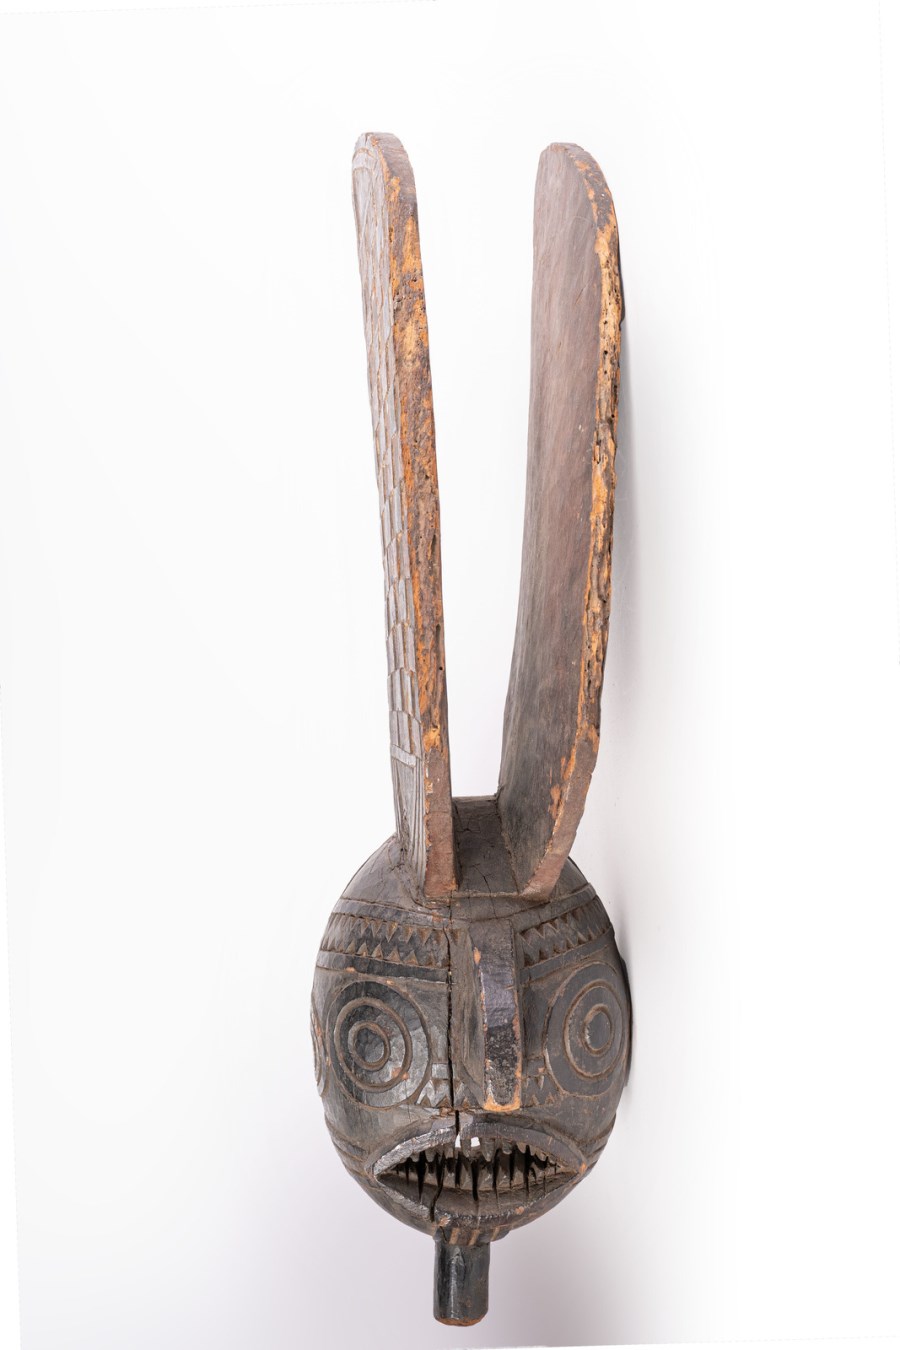 Maschera a doppia cresta, Winiama
Burkina Faso (Arte Africana )